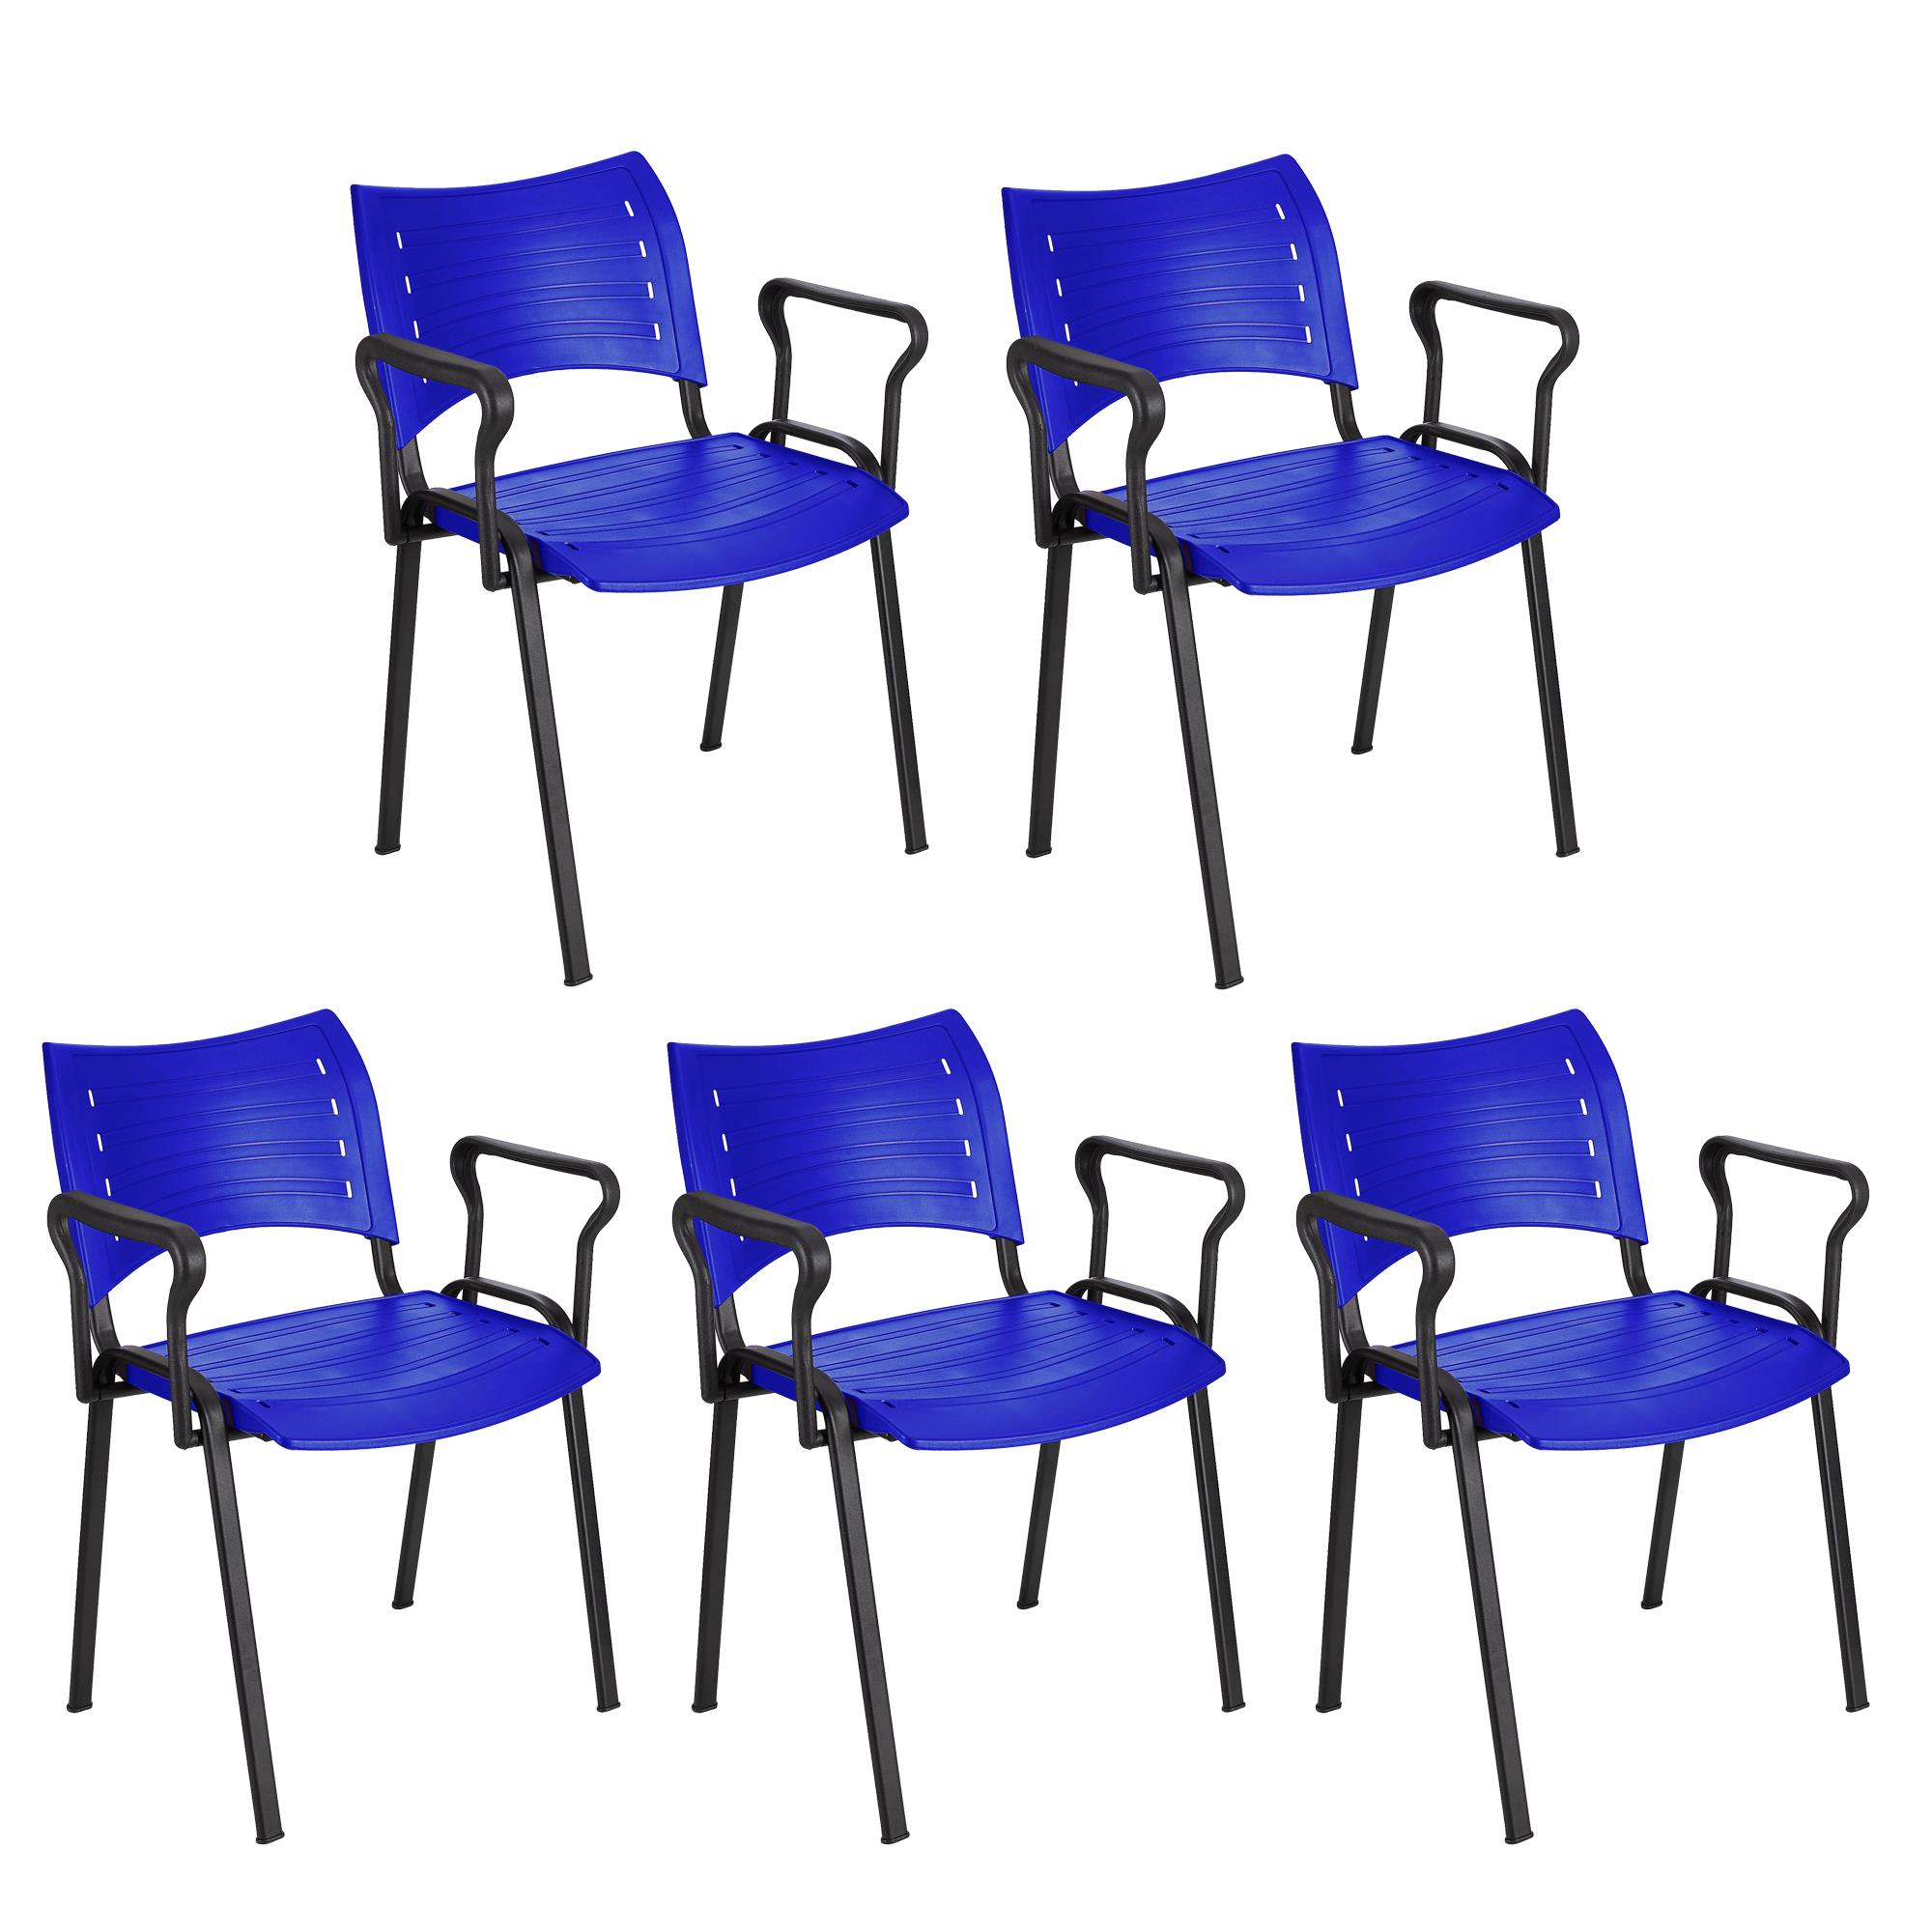 Lote 5 Cadeiras de Visita ELVA COM BRAÇOS, Confortável, Pernas Pretas, Cor Azul